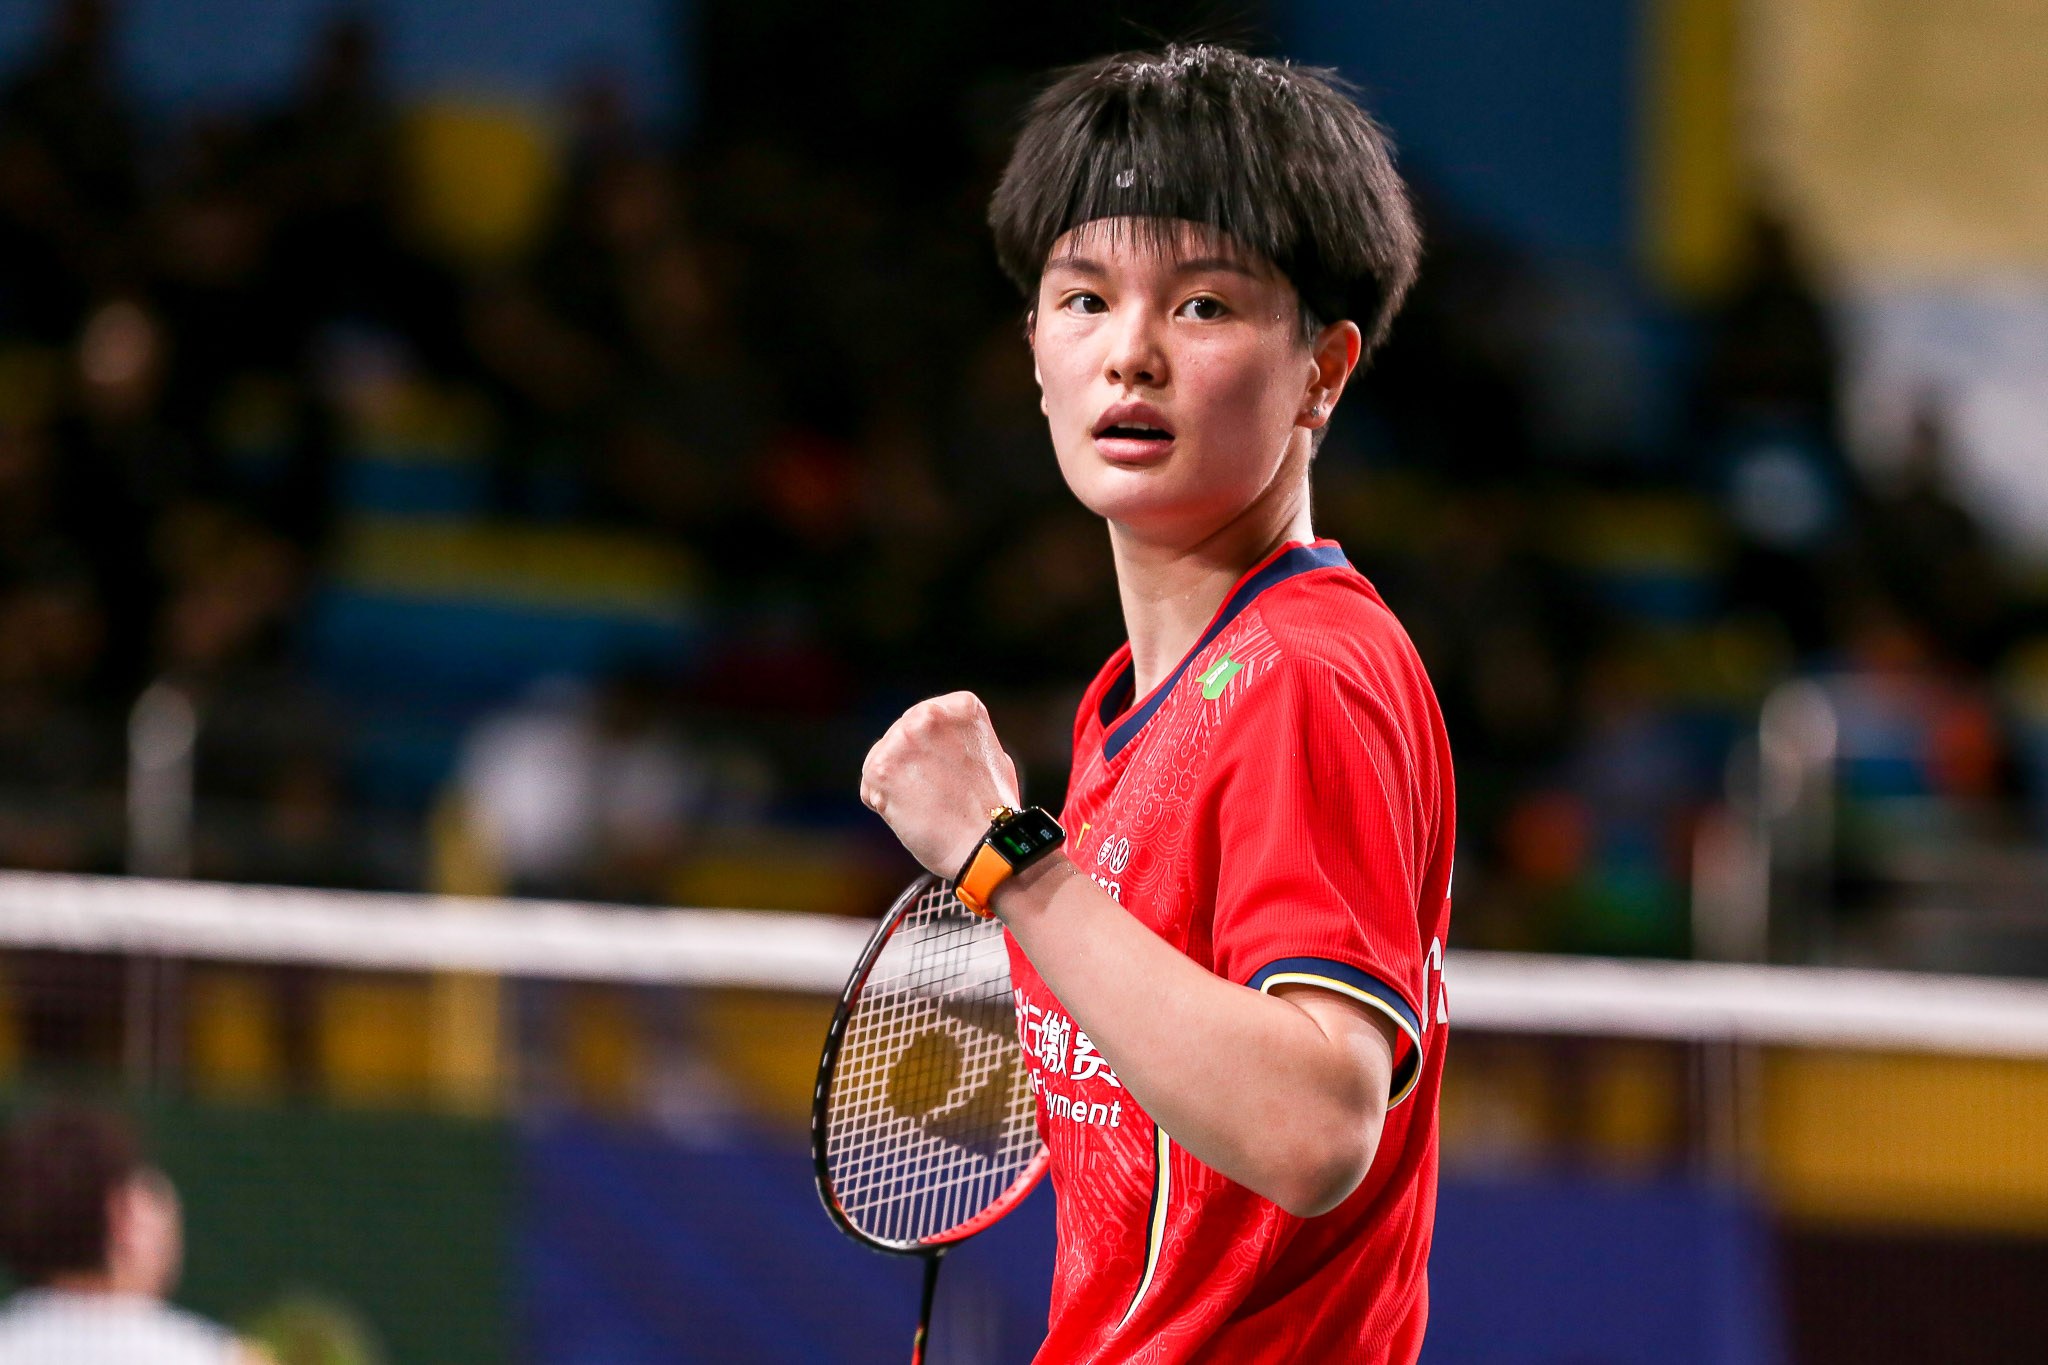 Singapore Open Badminton Final LIVE: PV Sindhu eyes maiden Super 500 title in 2022, faces China's Wang Zhi Yi in Singapore Open summit clash - Follow Sindhu vs Zhi Yi LIVE updates 